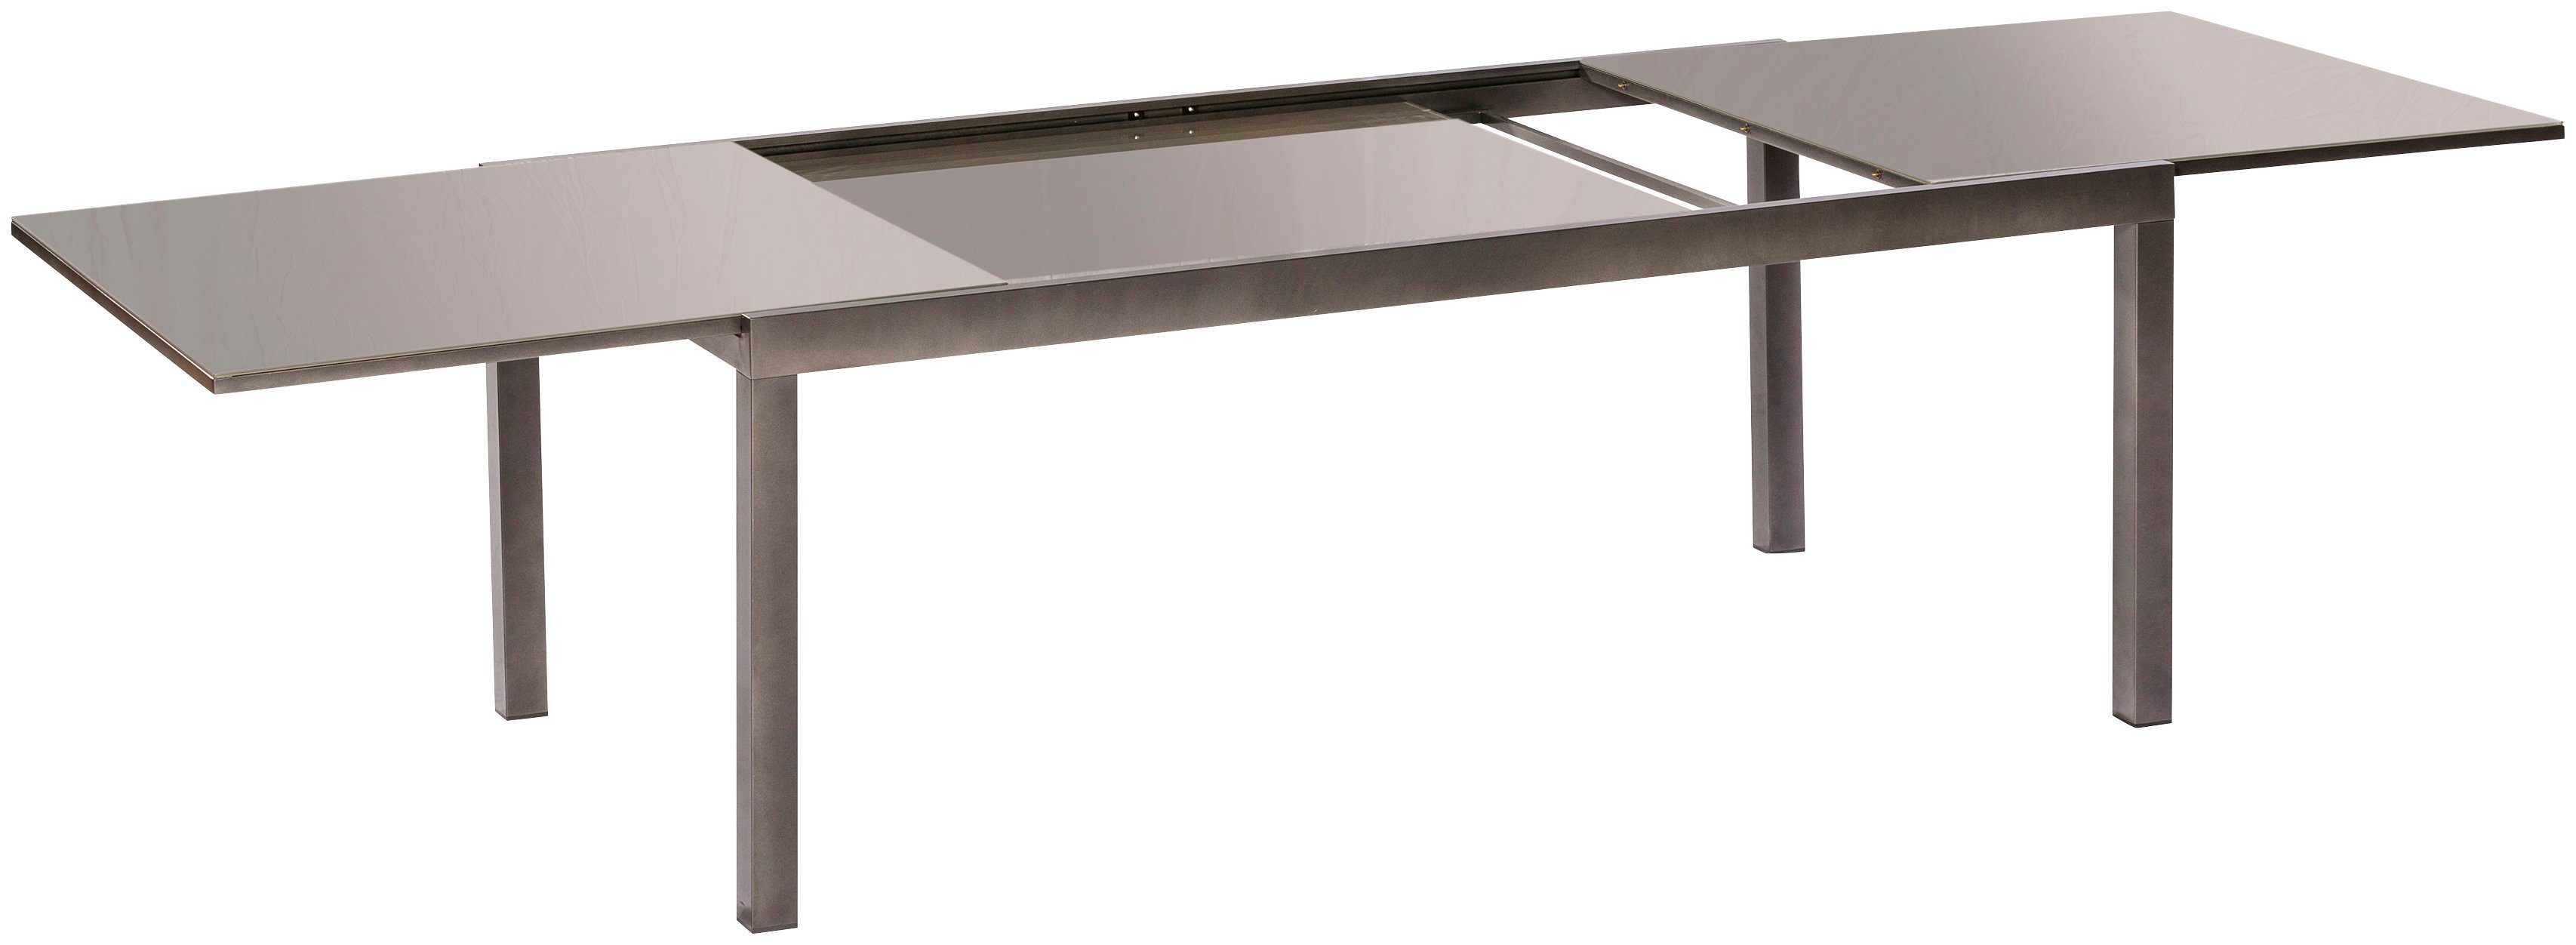 Semi AZ-Tisch, Gartentisch 110x220 cm MERXX